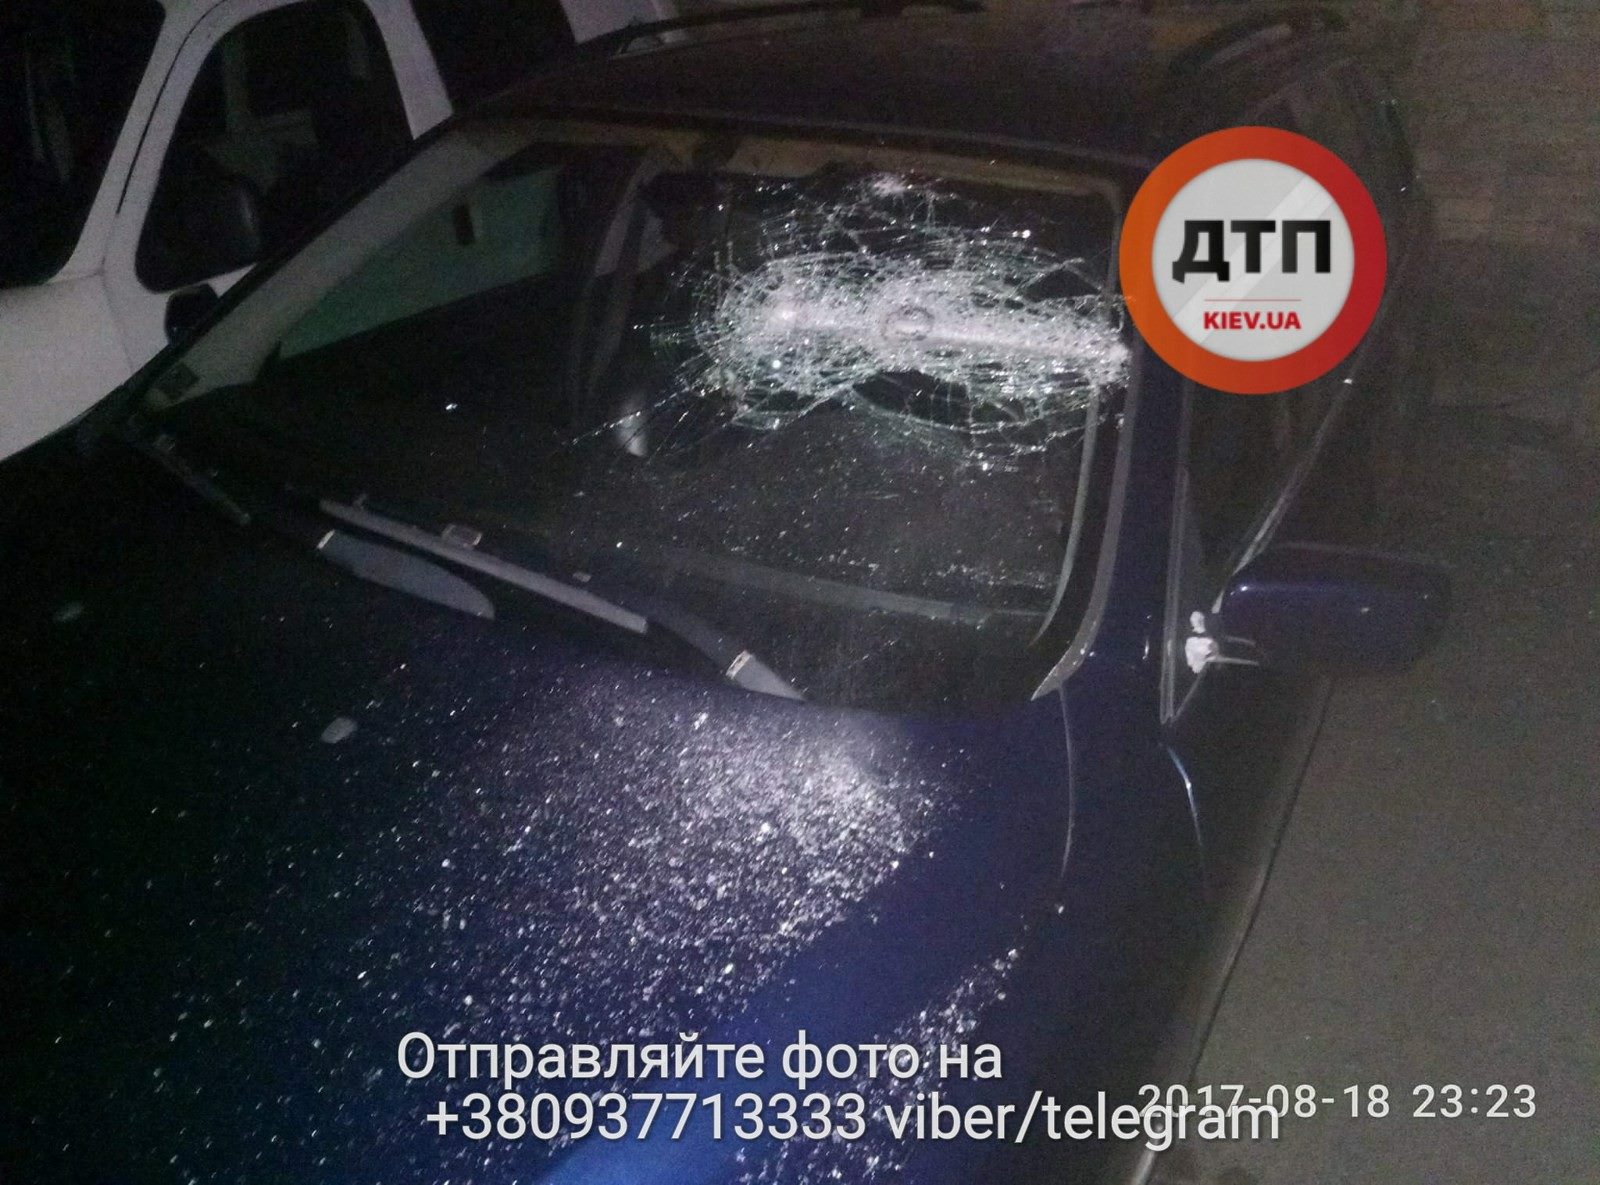 В Киеве избили и похитили водителя авто на еврономерах (фото)